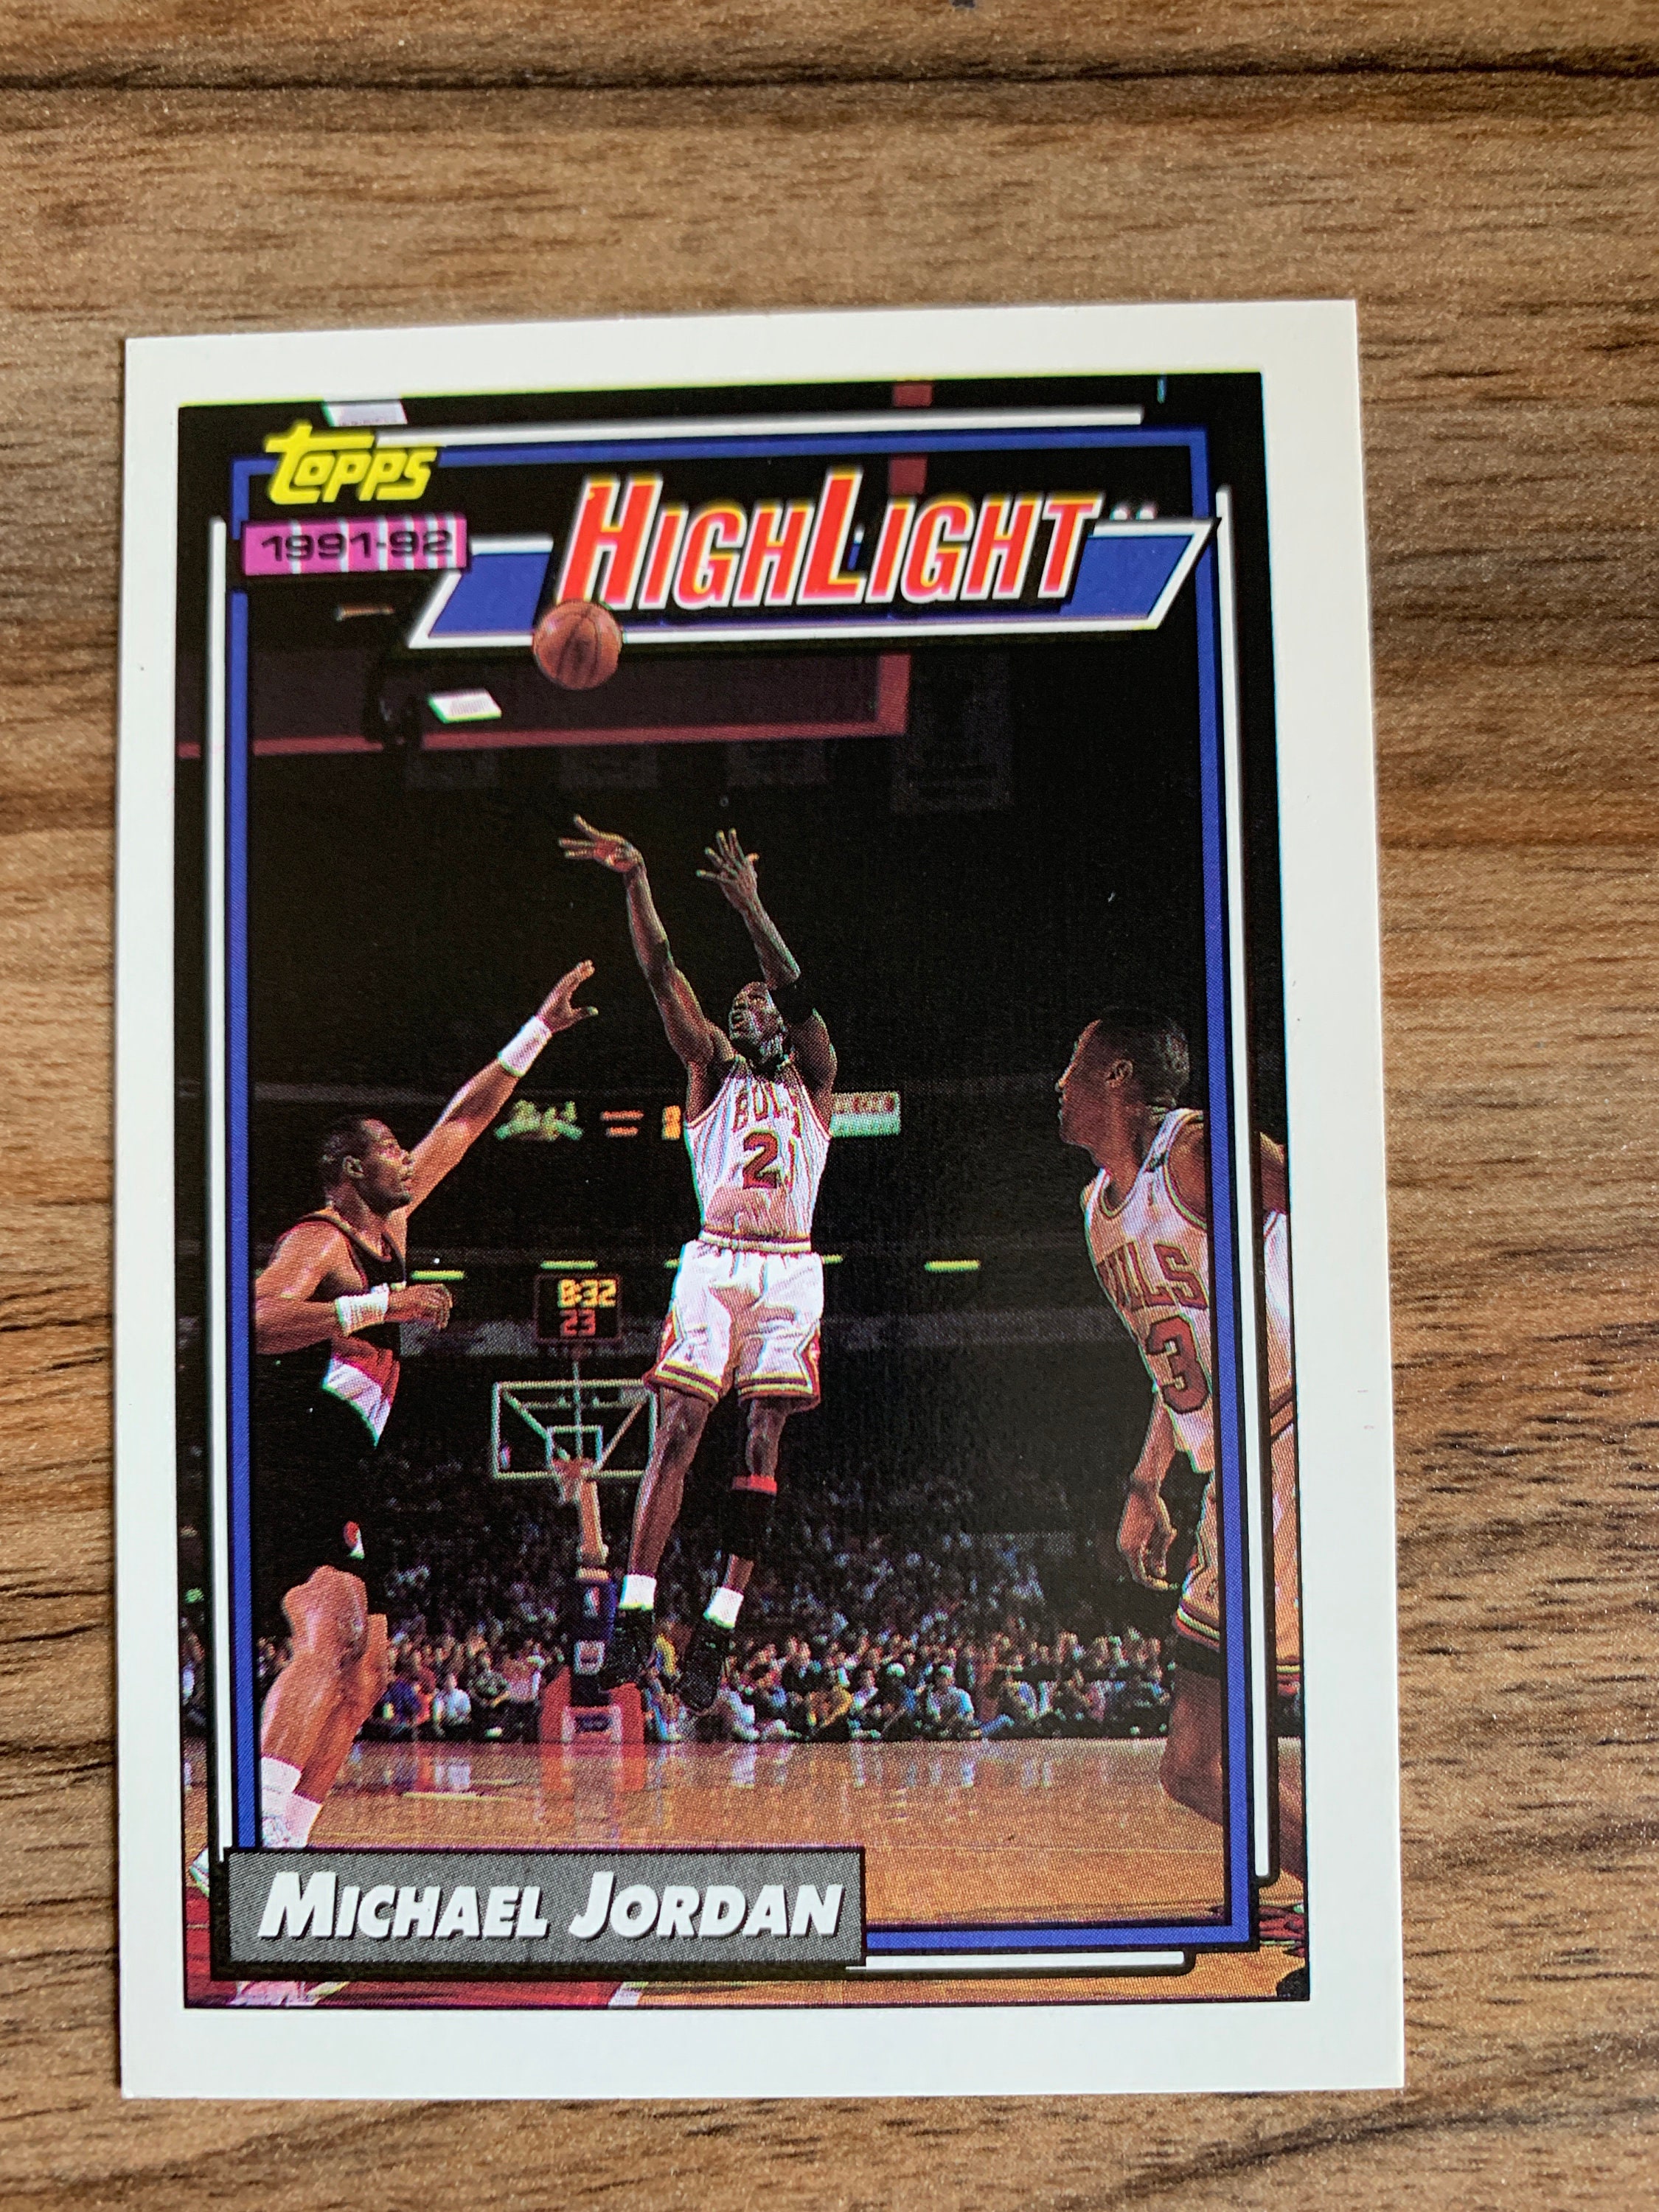 1992 Michael Jordan Topps #3 Highlight